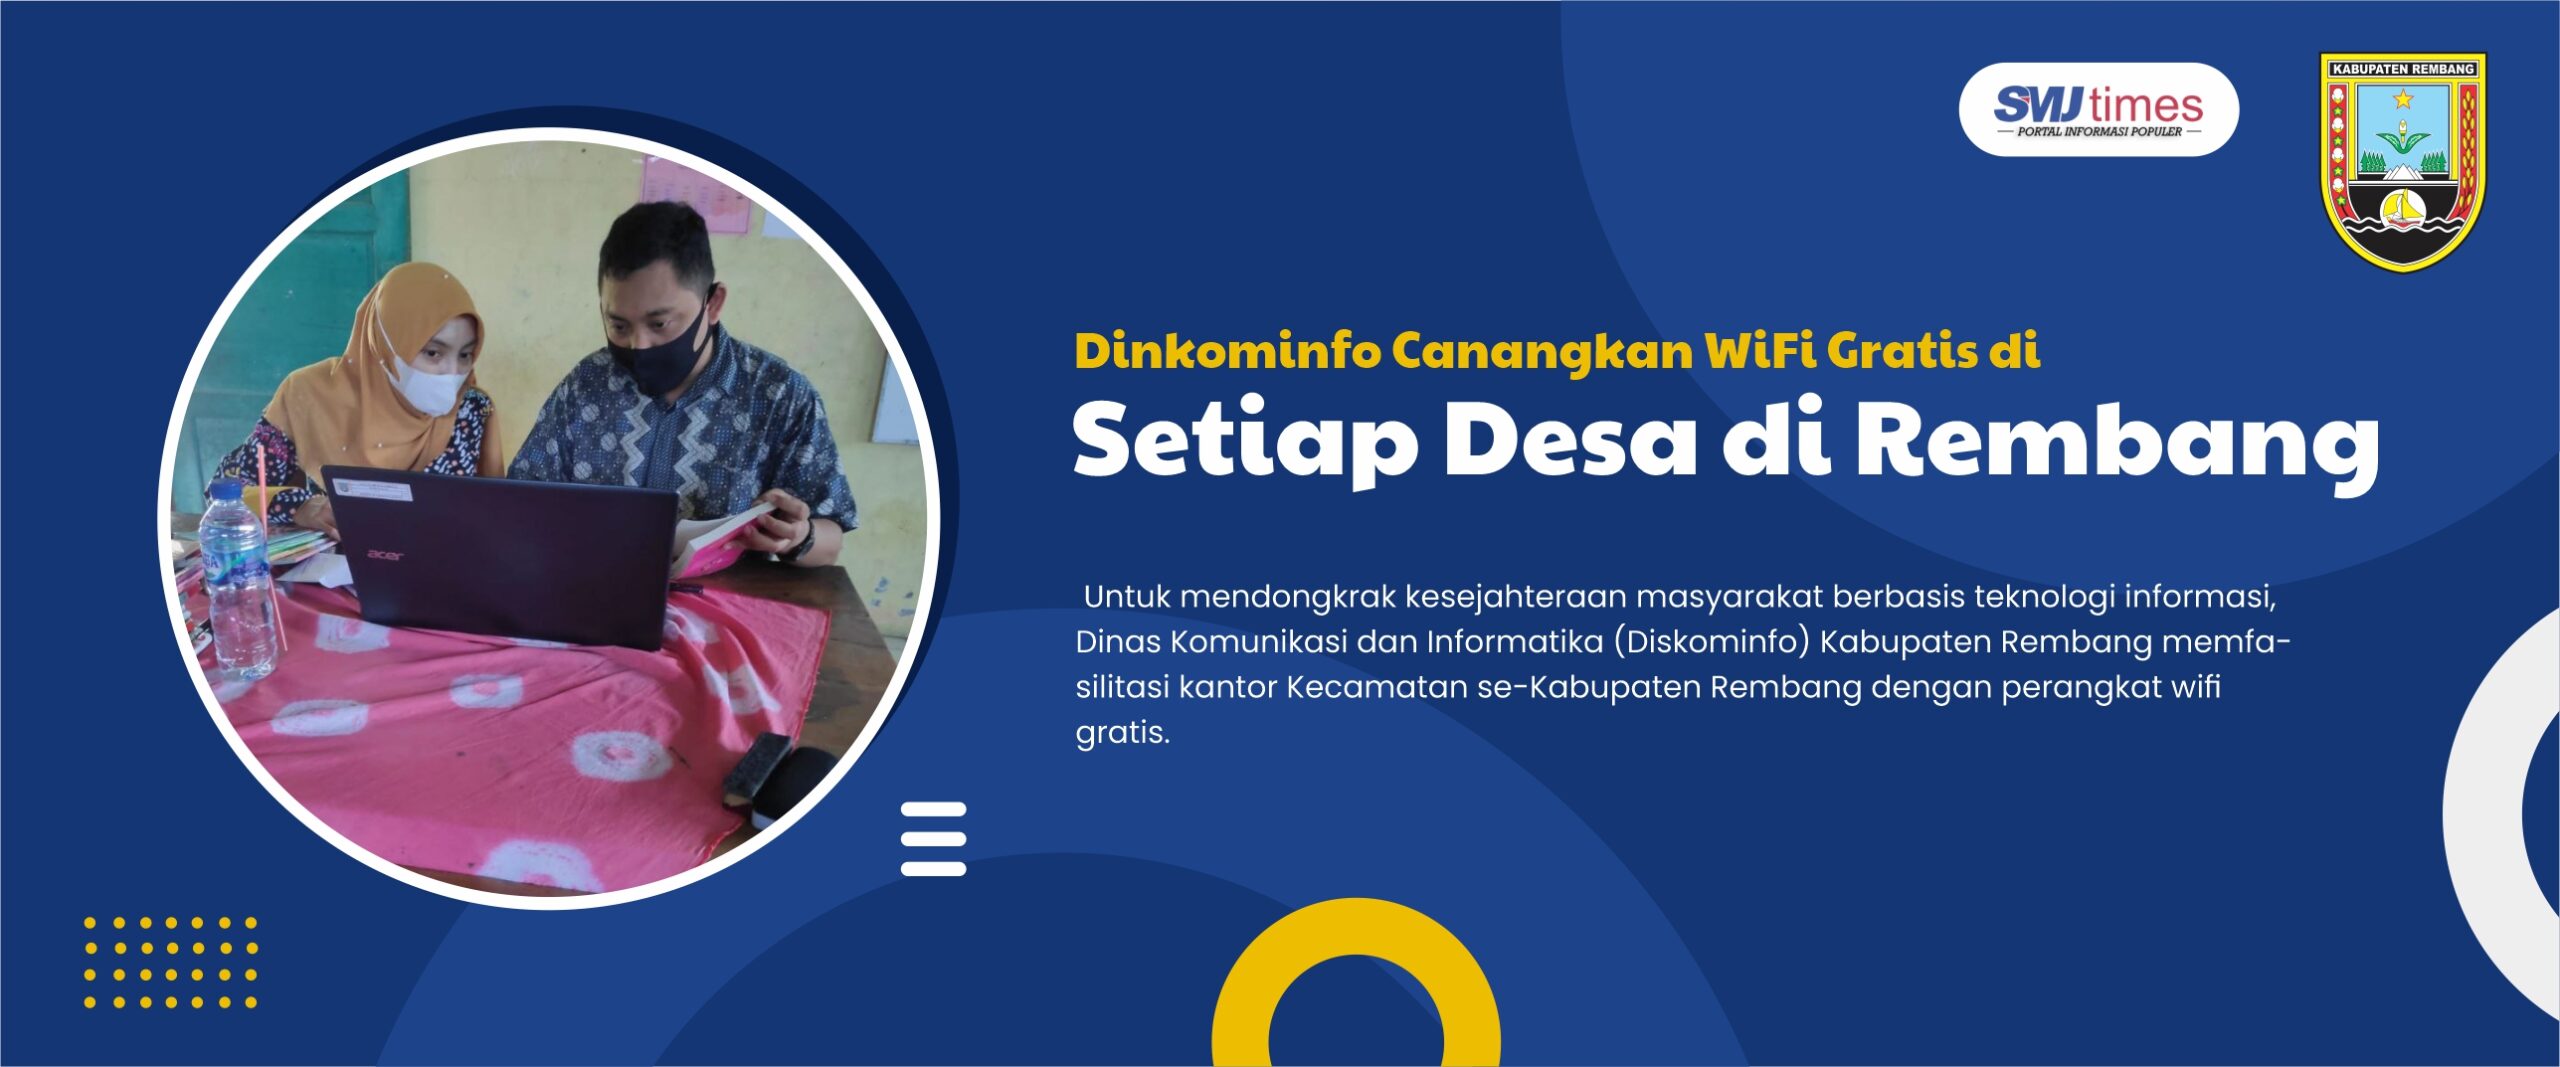 Dinkominfo Canangkan WiFi Gratis di Setiap Desa di Rembang